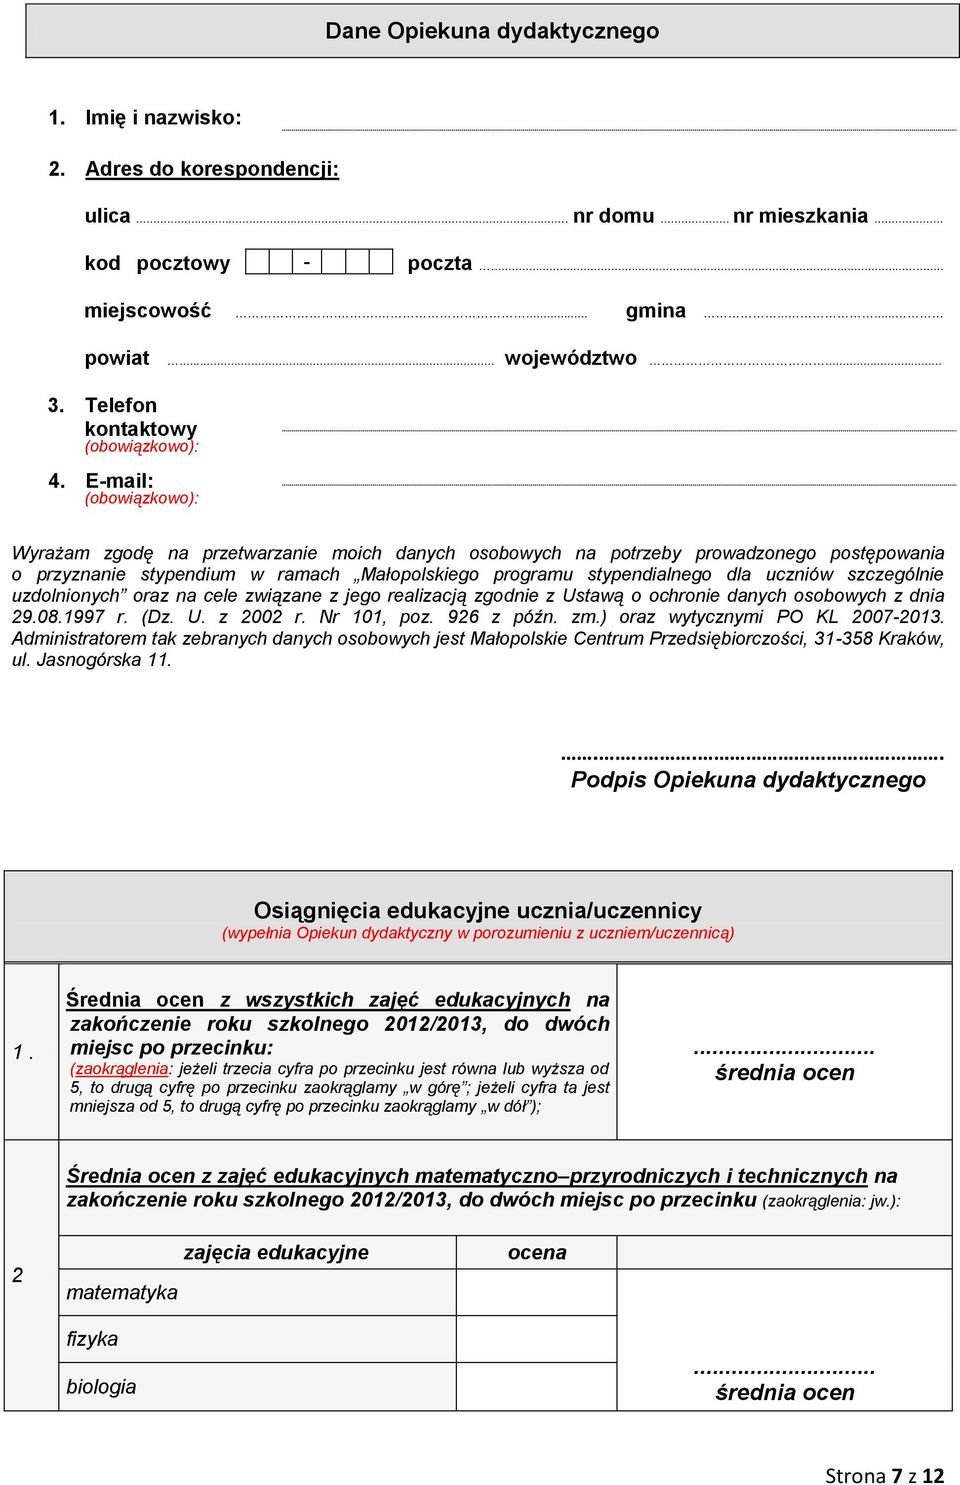 E-mail: (obowiązkowo): Wyrażam zgodę na przetwarzanie moich danych osobowych na potrzeby prowadzonego postępowania o przyznanie stypendium w ramach Małopolskiego programu stypendialnego dla uczniów